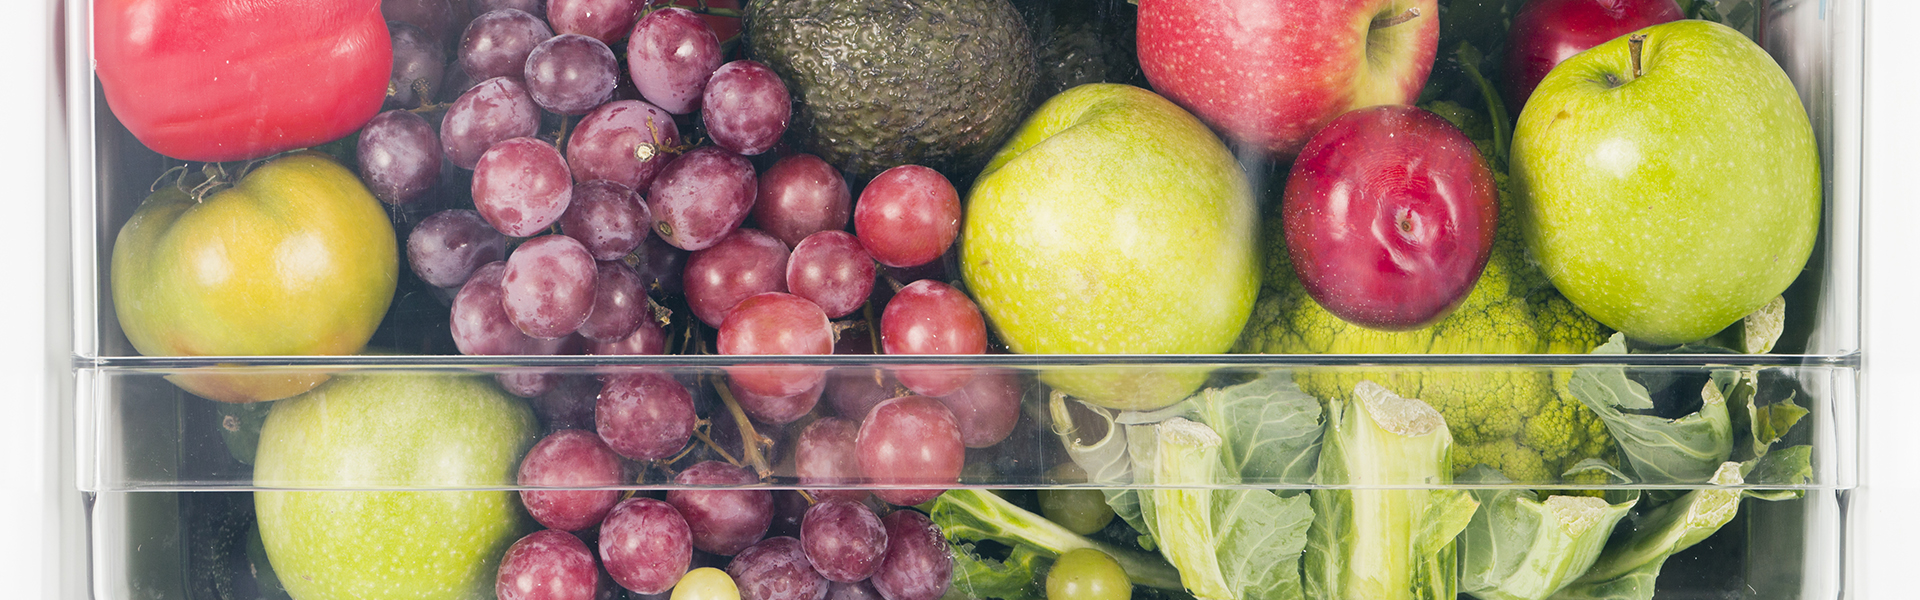 6 esenciales de almacenamiento que cada cocina necesita para minimizar el desperdicio de alimentos